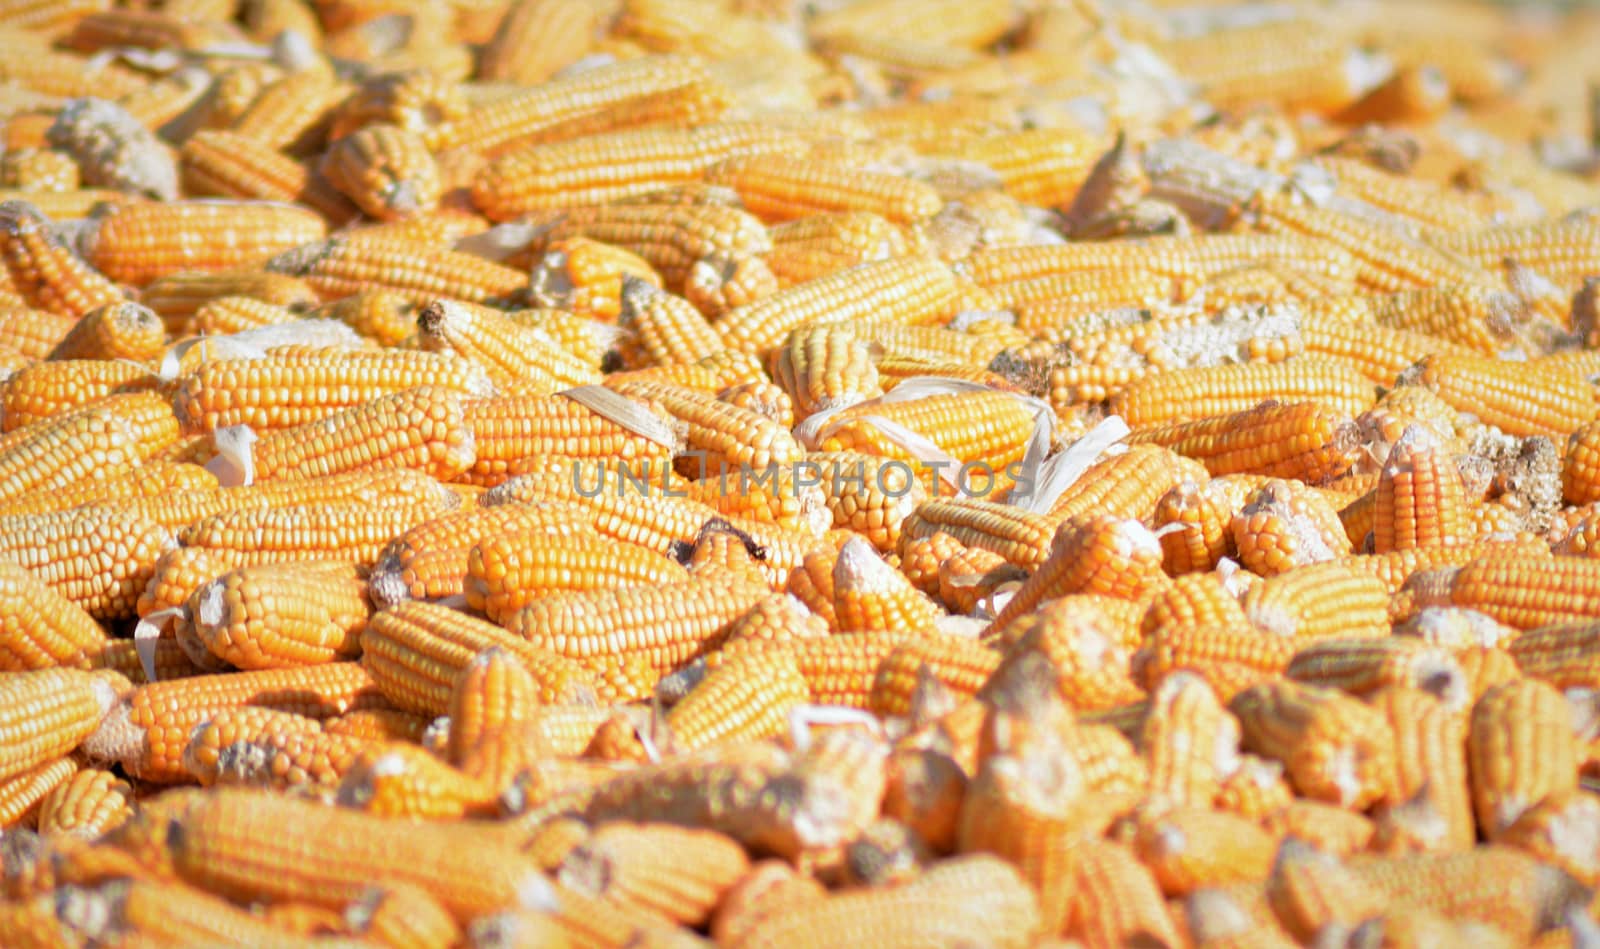 Bulk of husked raw corn cobs by rkbalaji